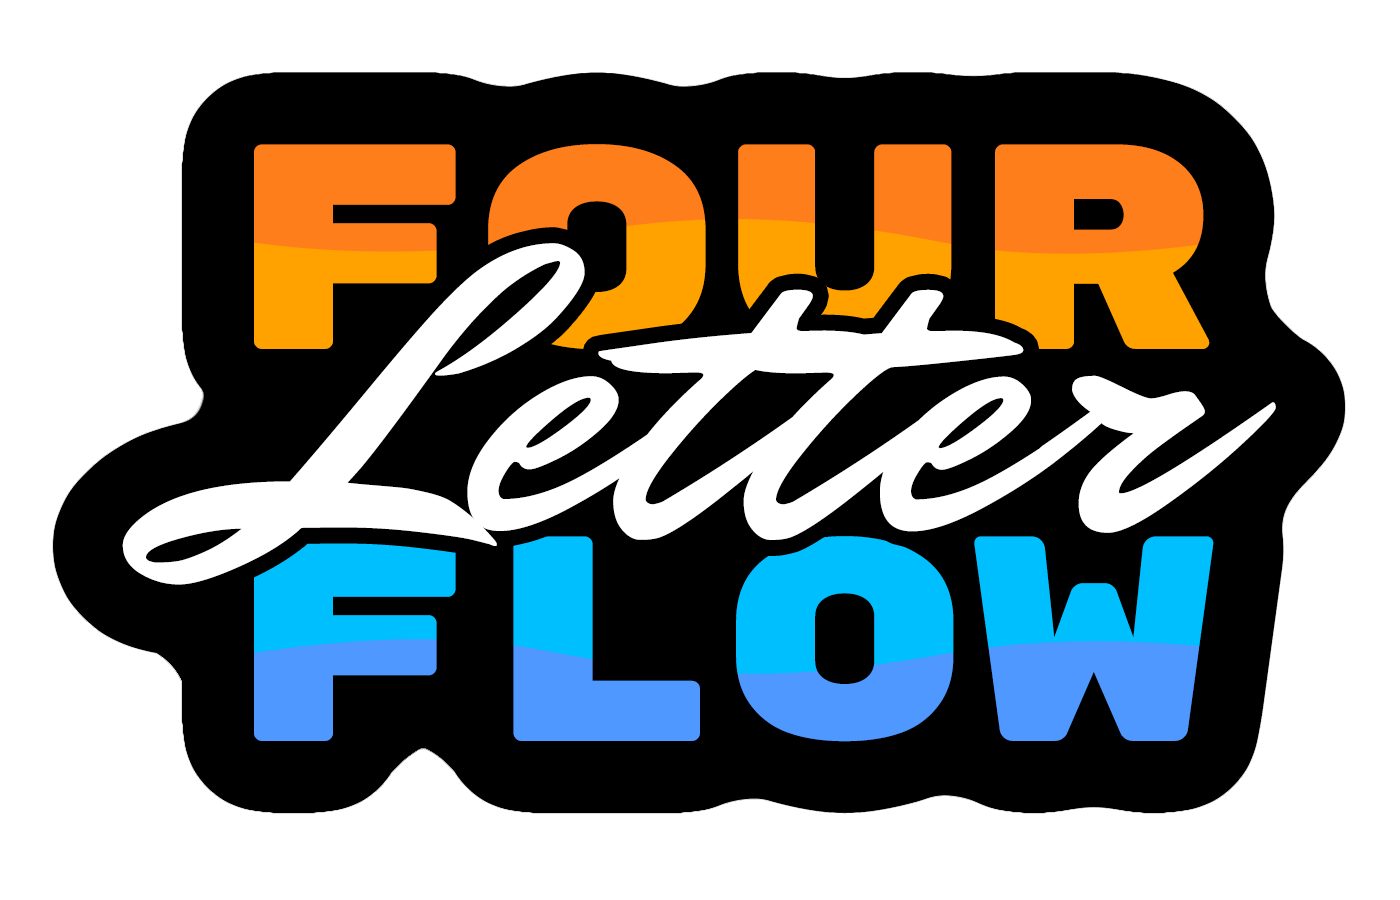 Four Letter Flow